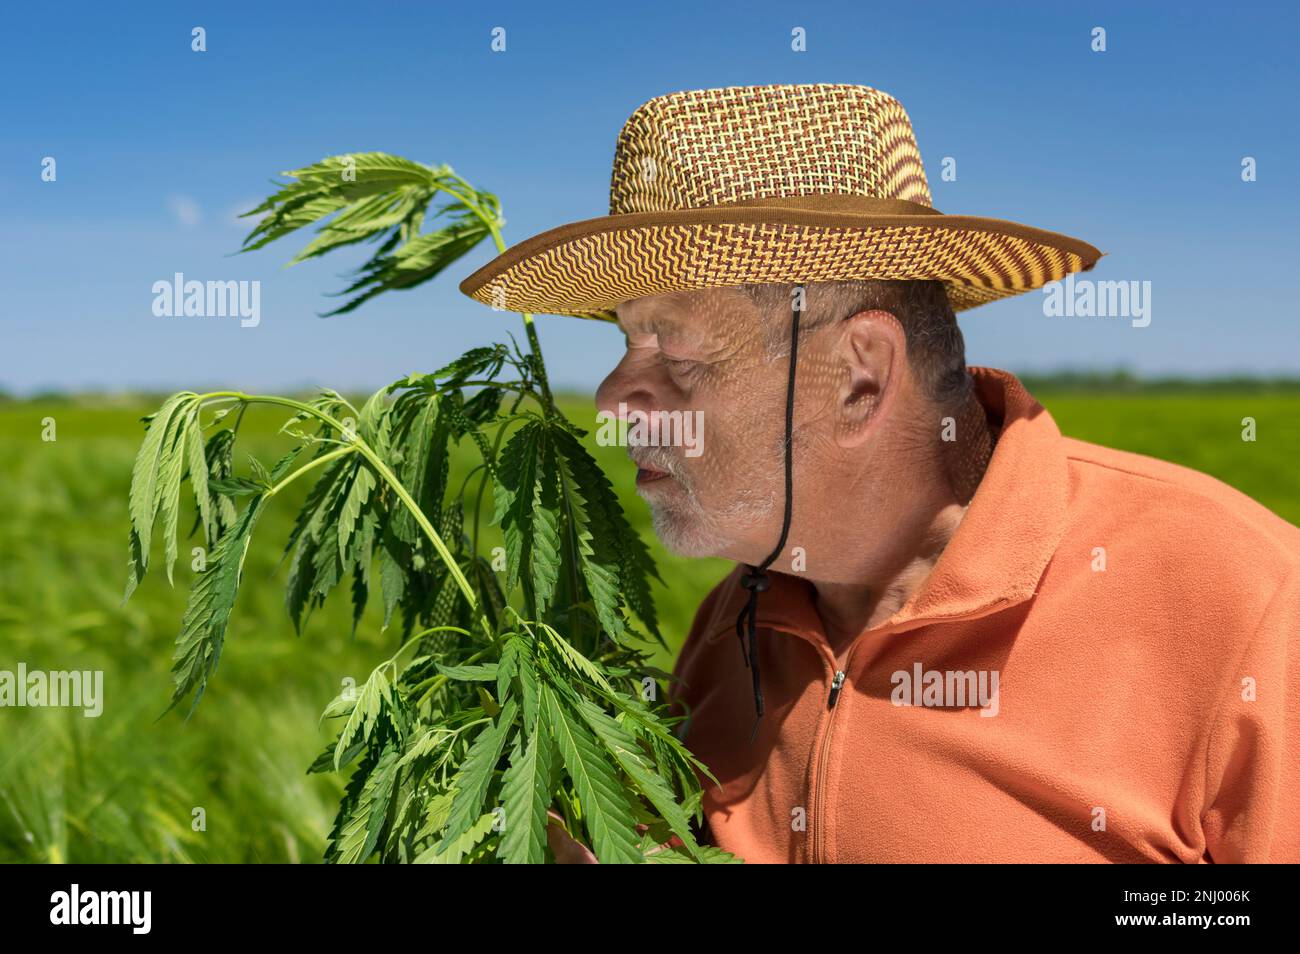 Porträt eines bärtigen, kaukasischen Senioren, der ein orangefarbenes Sweatshirt, einen Strohhut und eine Hanfpflanze in die Hände nimmt Stockfoto